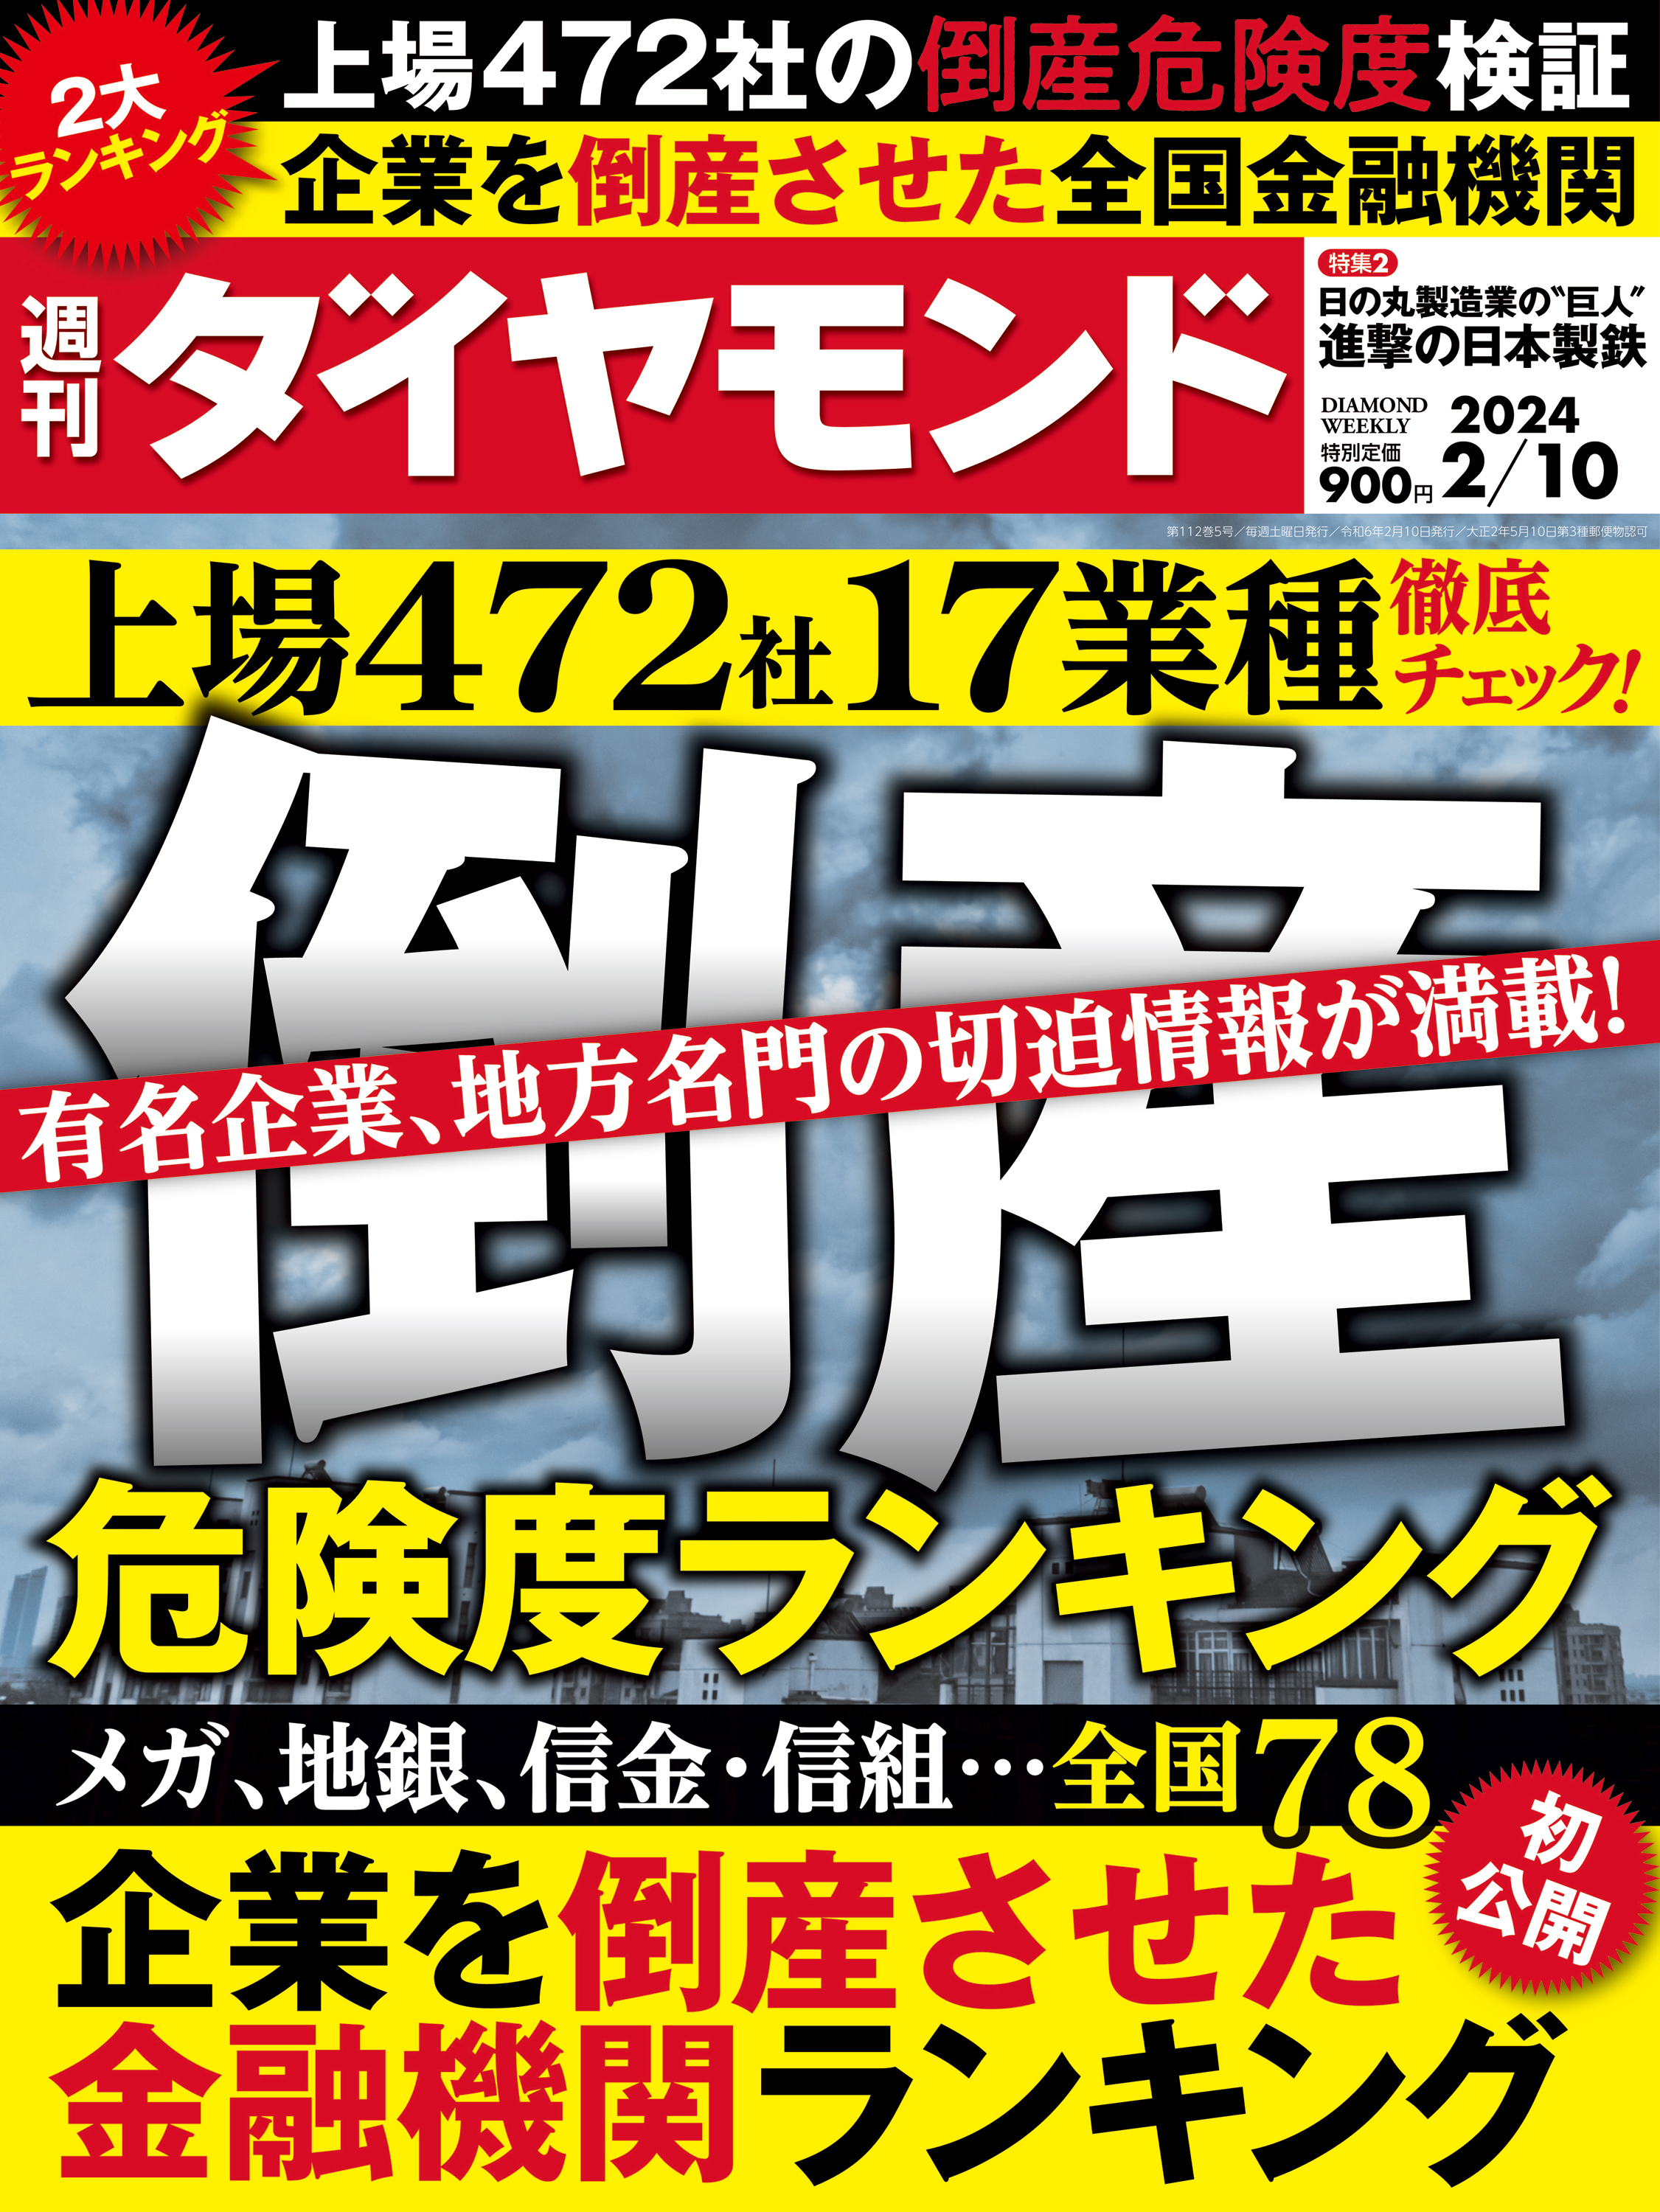 倒産危険度ランキング2024(週刊ダイヤモンド 2024年2/10号